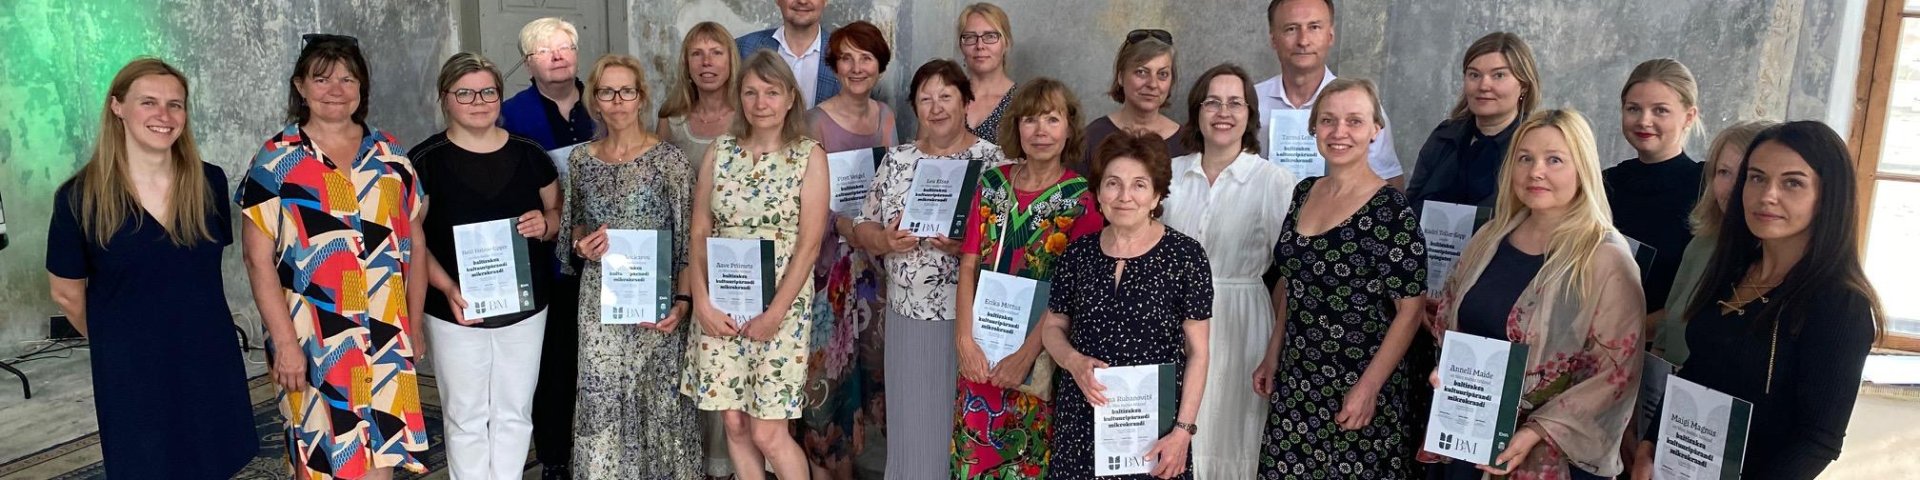 Baltisaksa kultuuripärandi mikrokraadiprogrammi läbis 19 inimest